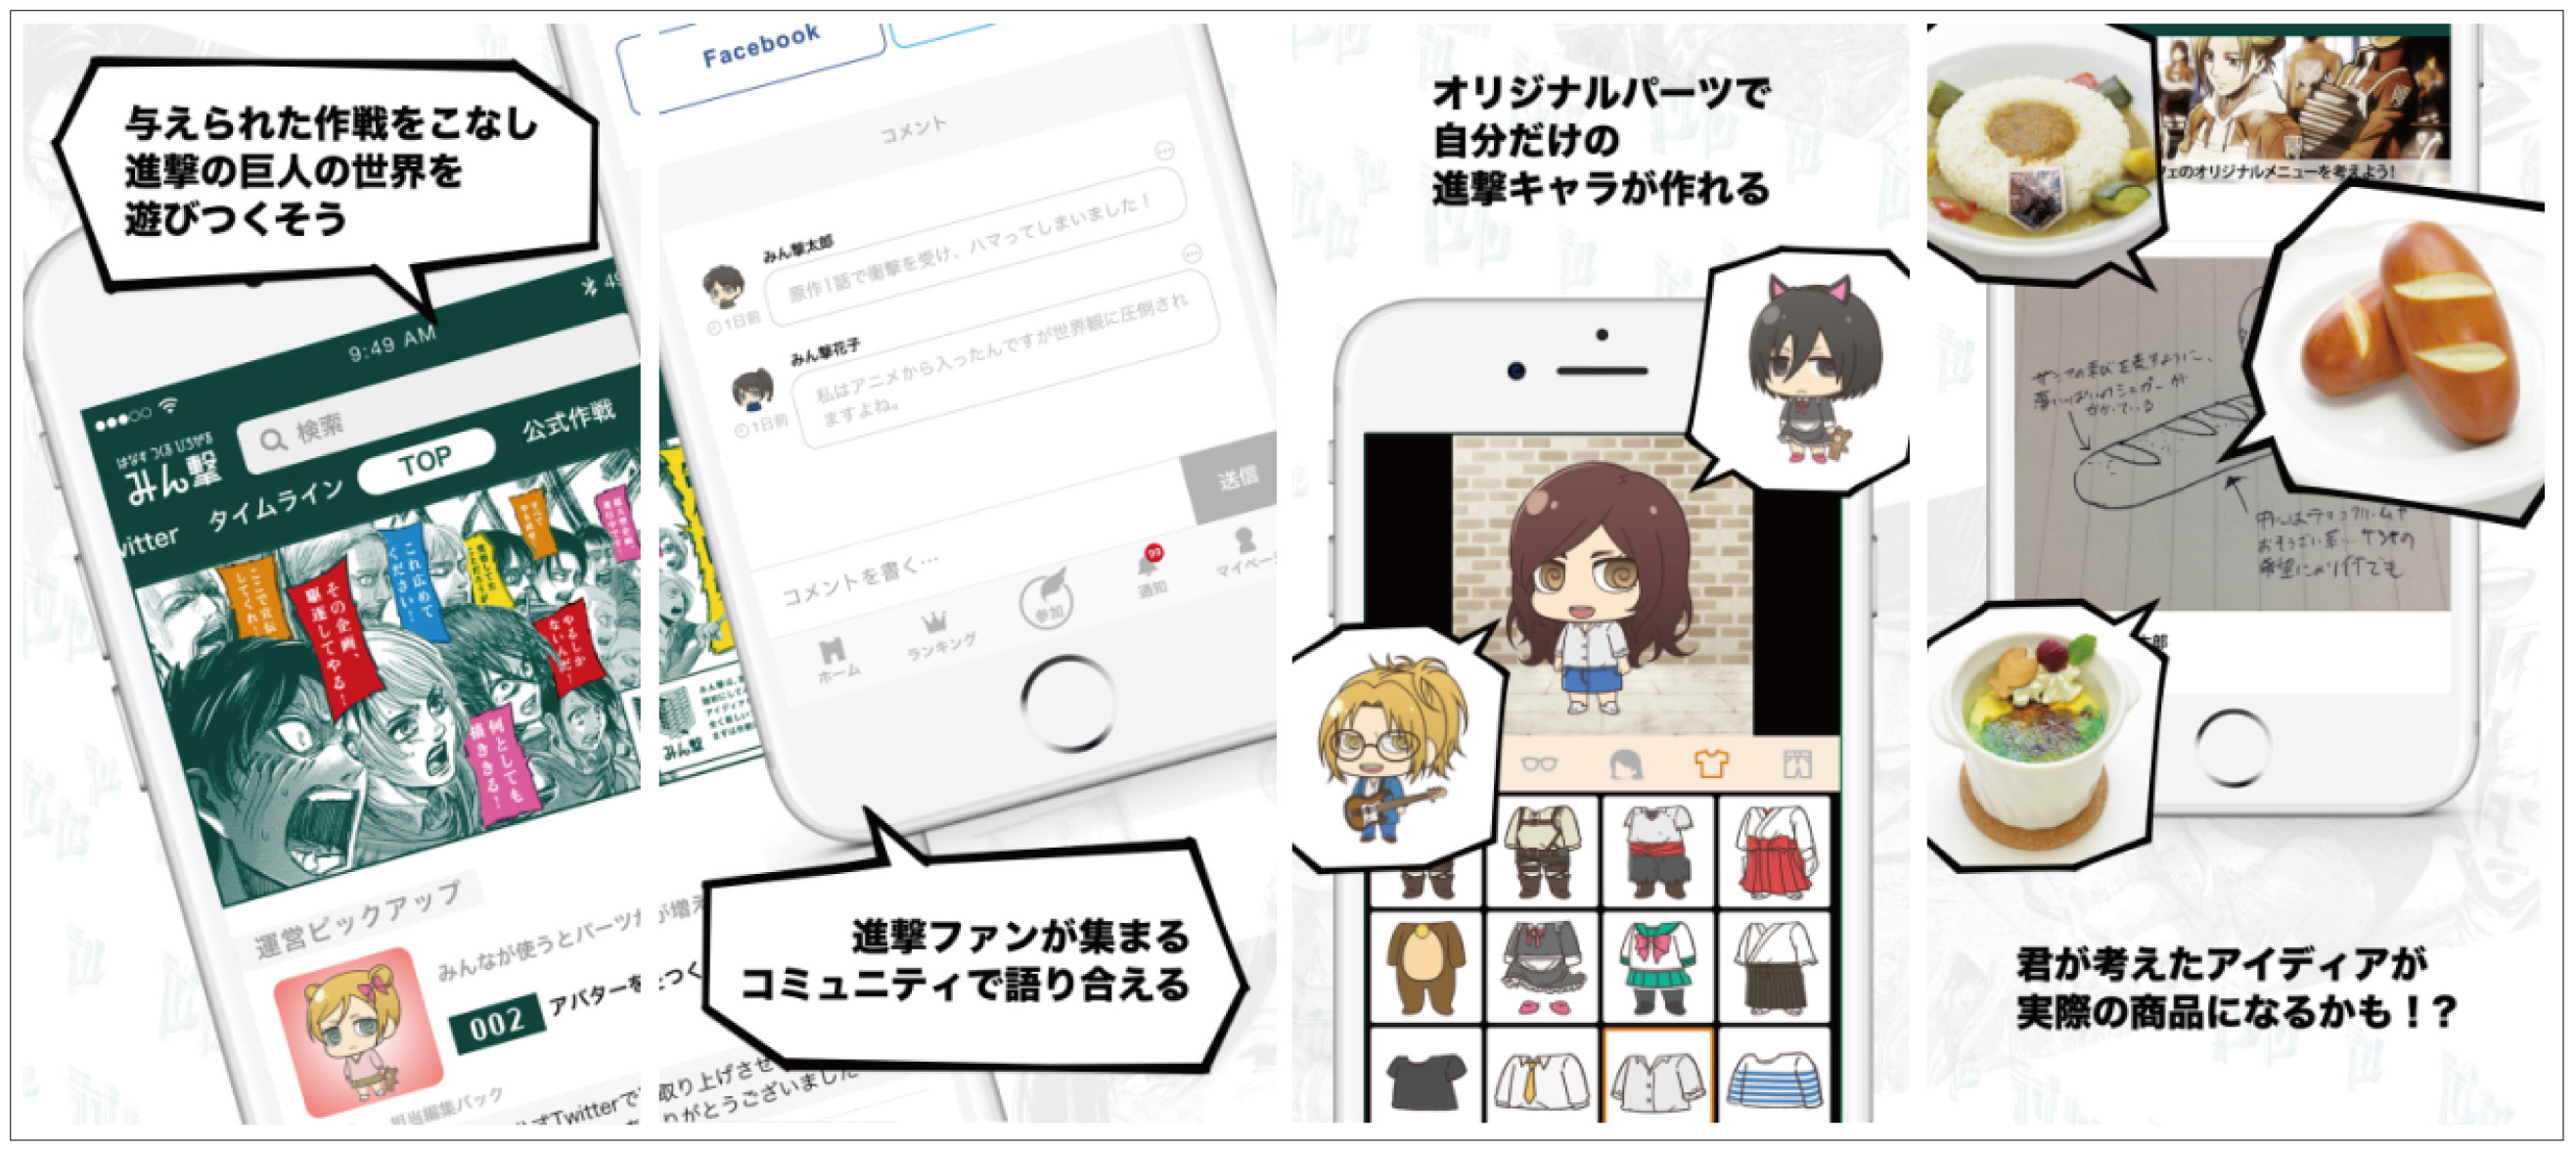 『進撃の巨人』公式ファンアプリ「みん撃」リリース!